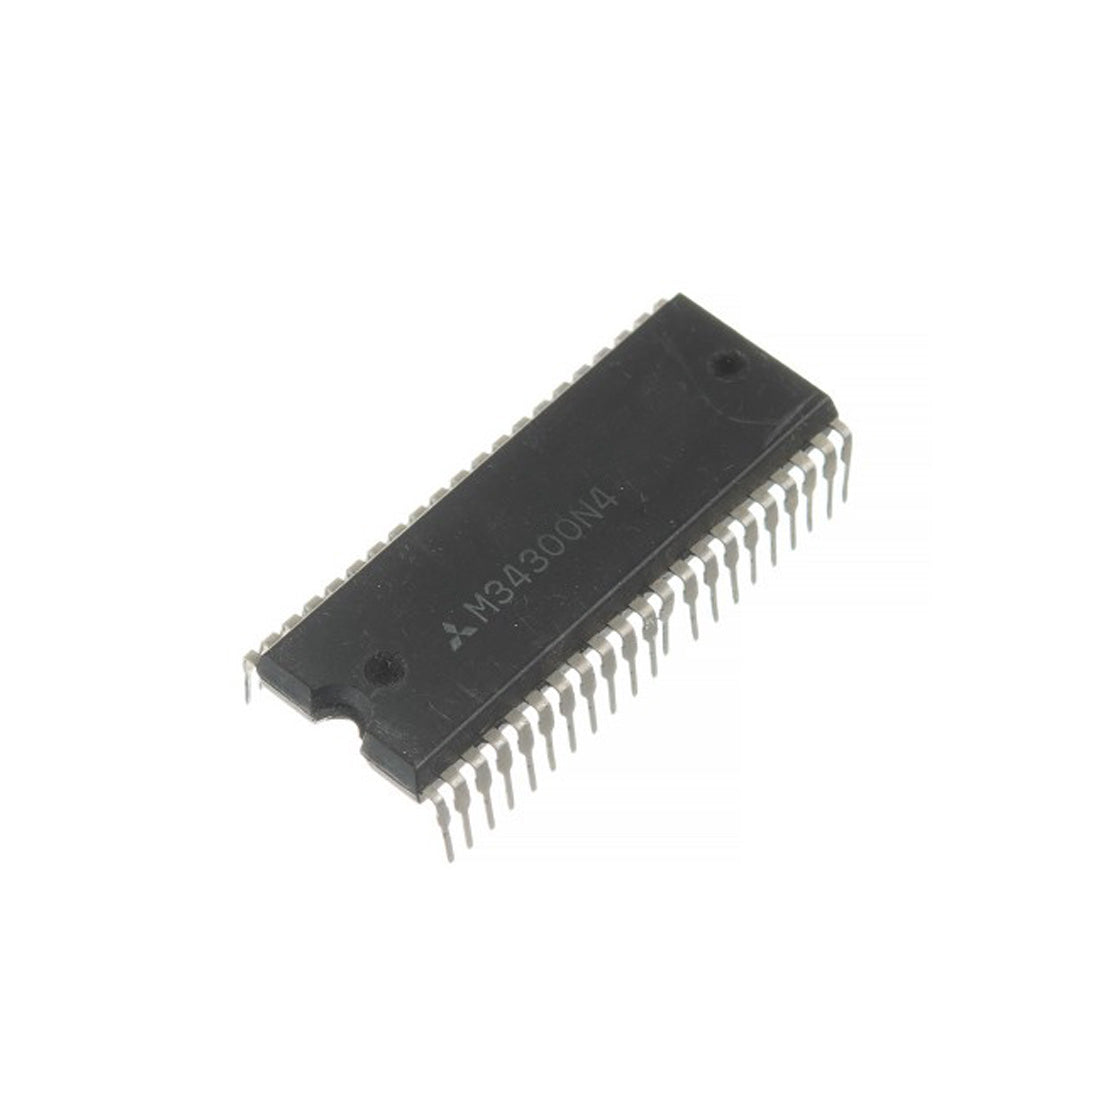 MITSUBISHI M34300N4 componente elettronico, circuito integrato, 42 contatti